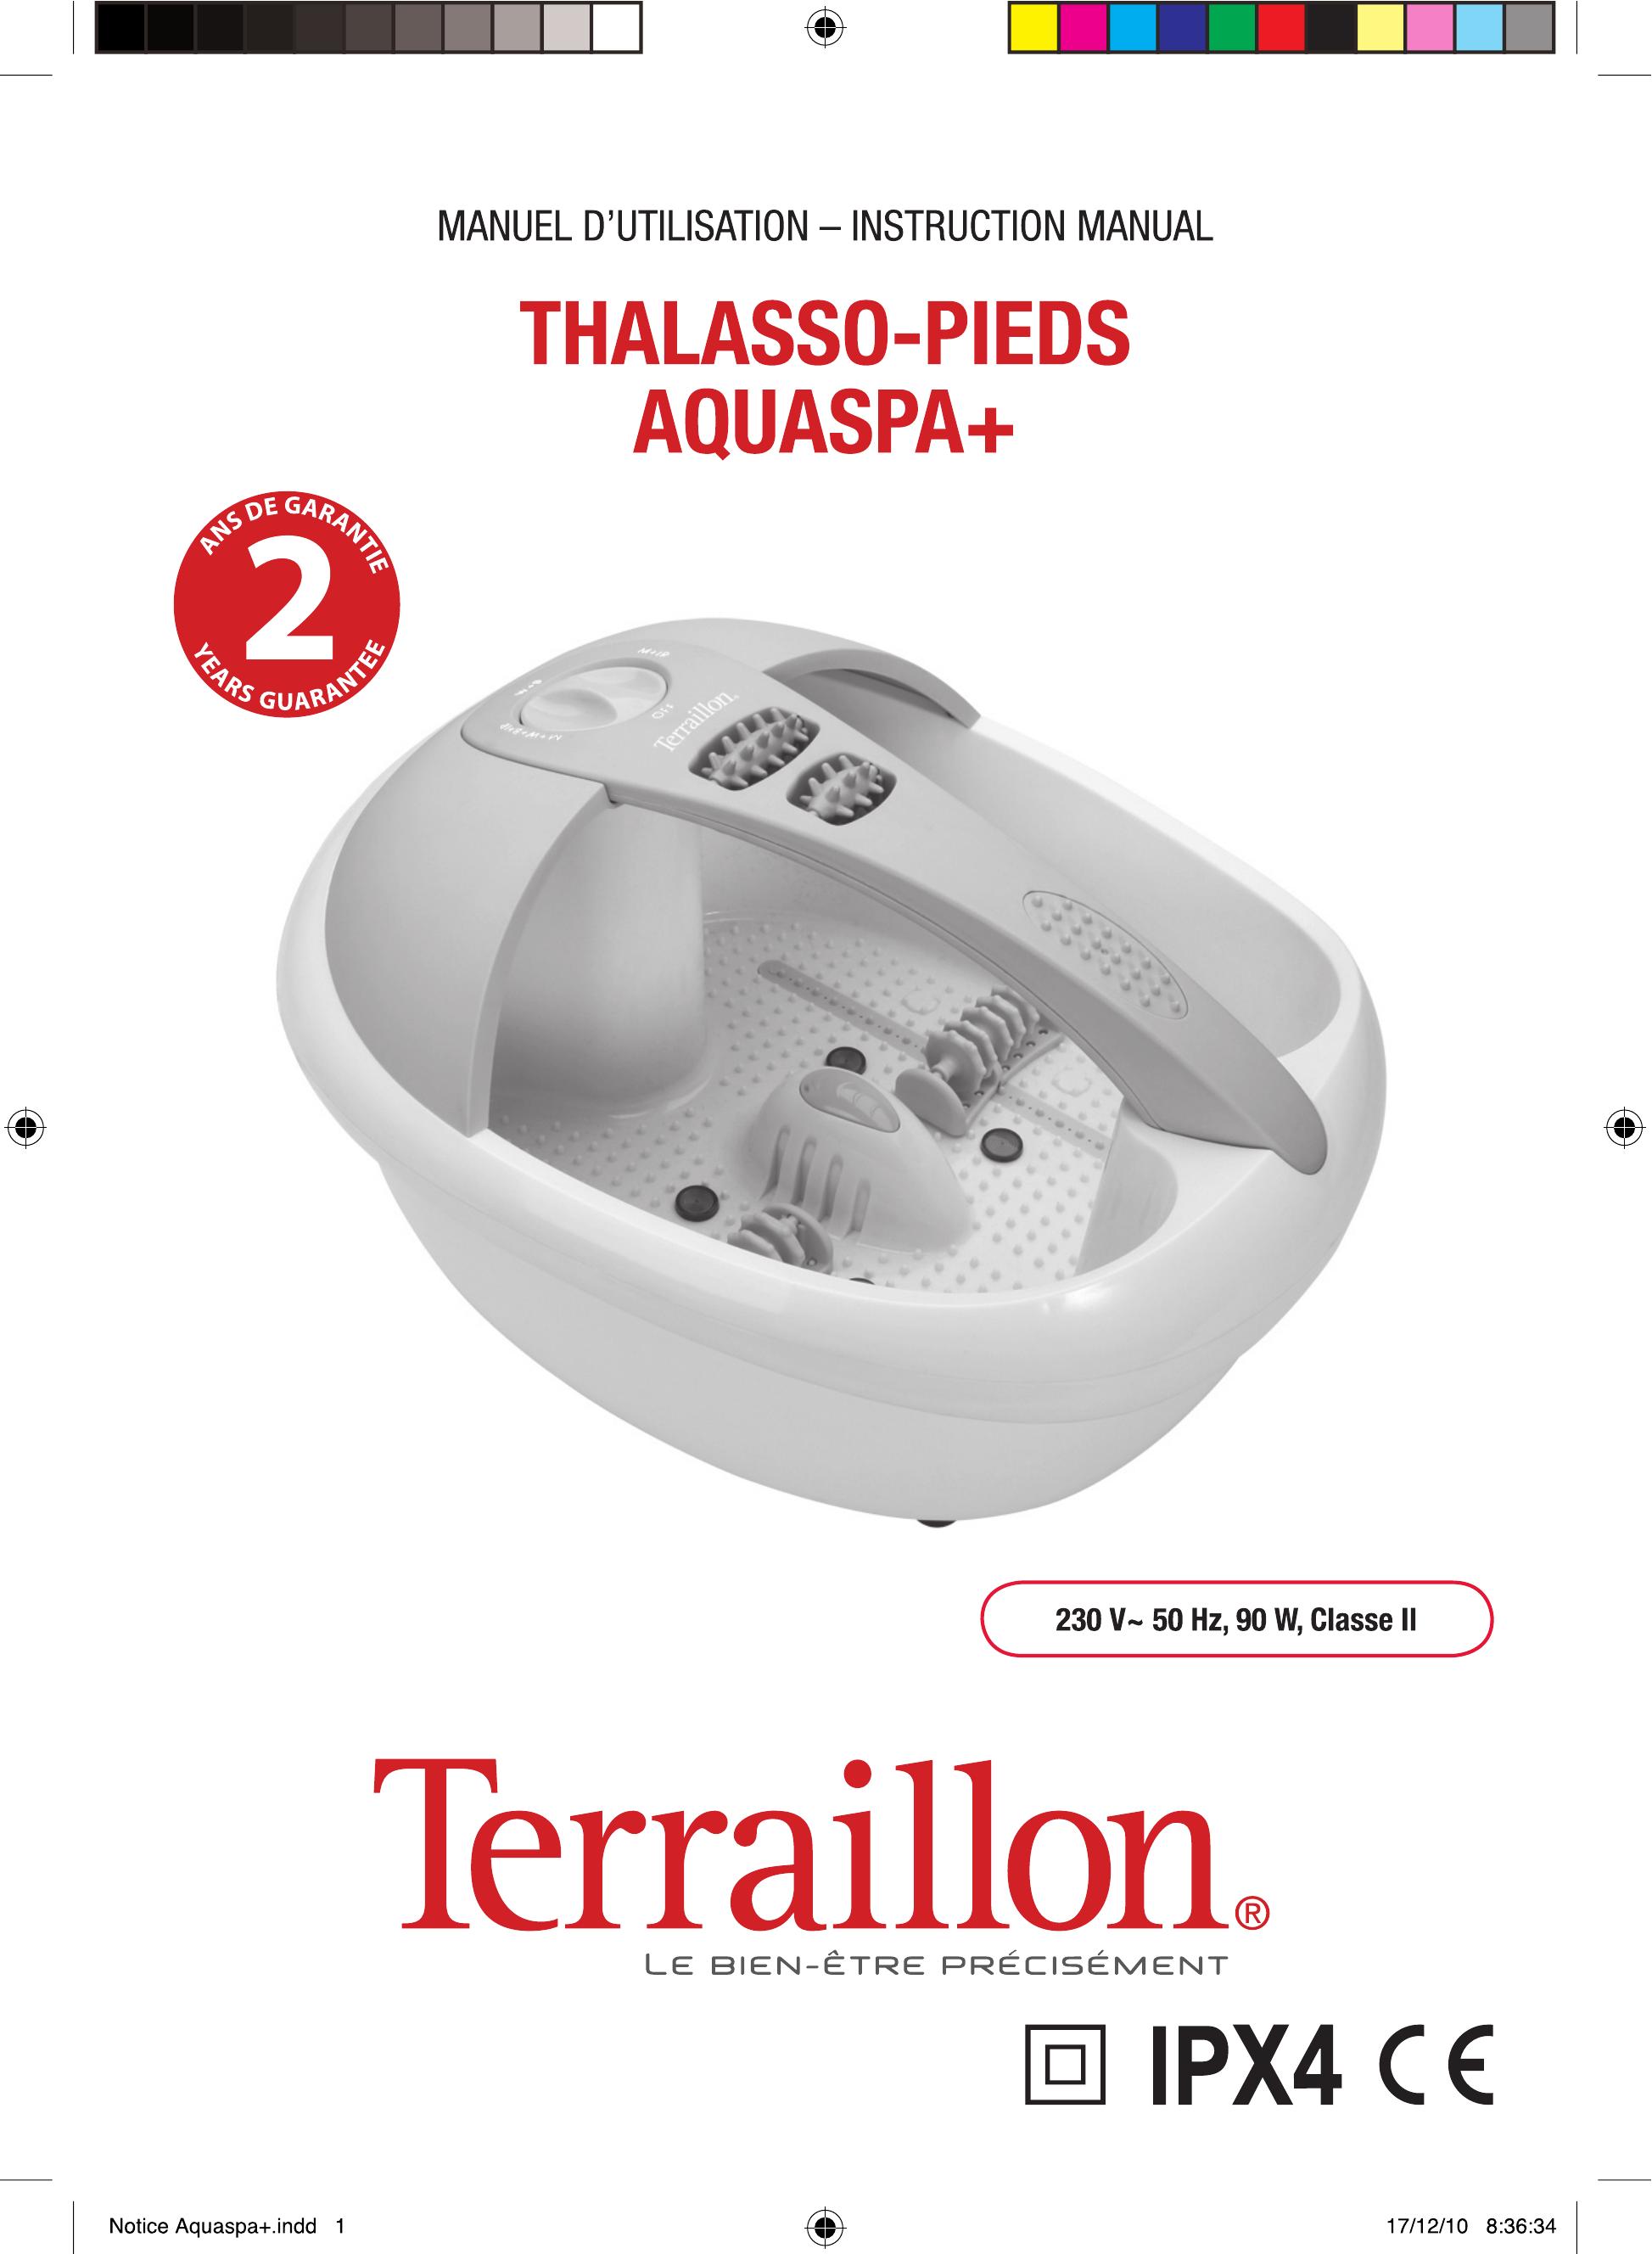 Terraillon IPX4 Pedicure Spa User Manual